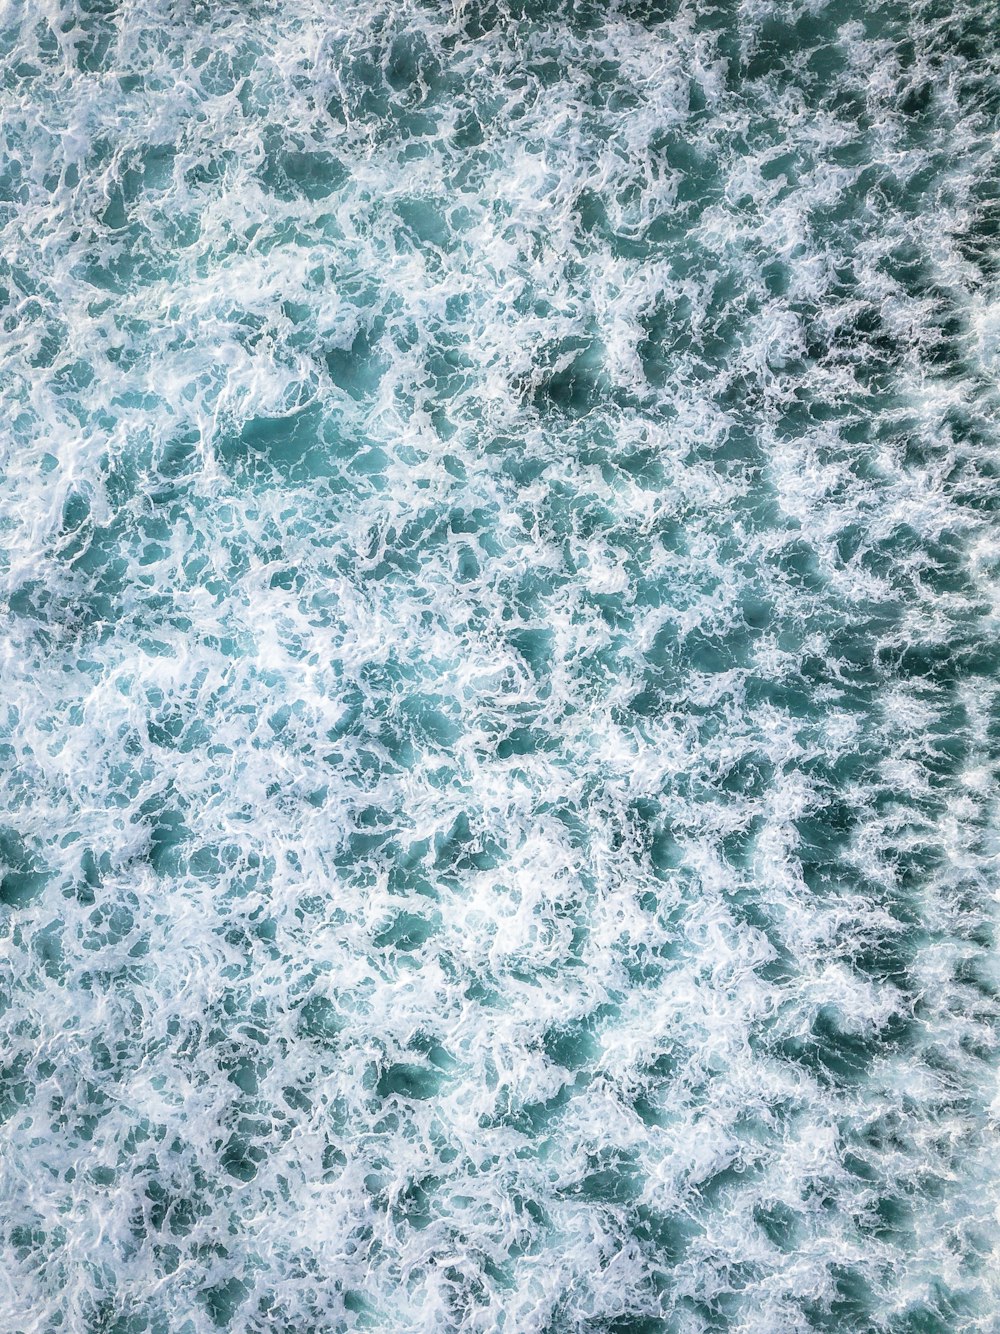 corpo de água branco e azul